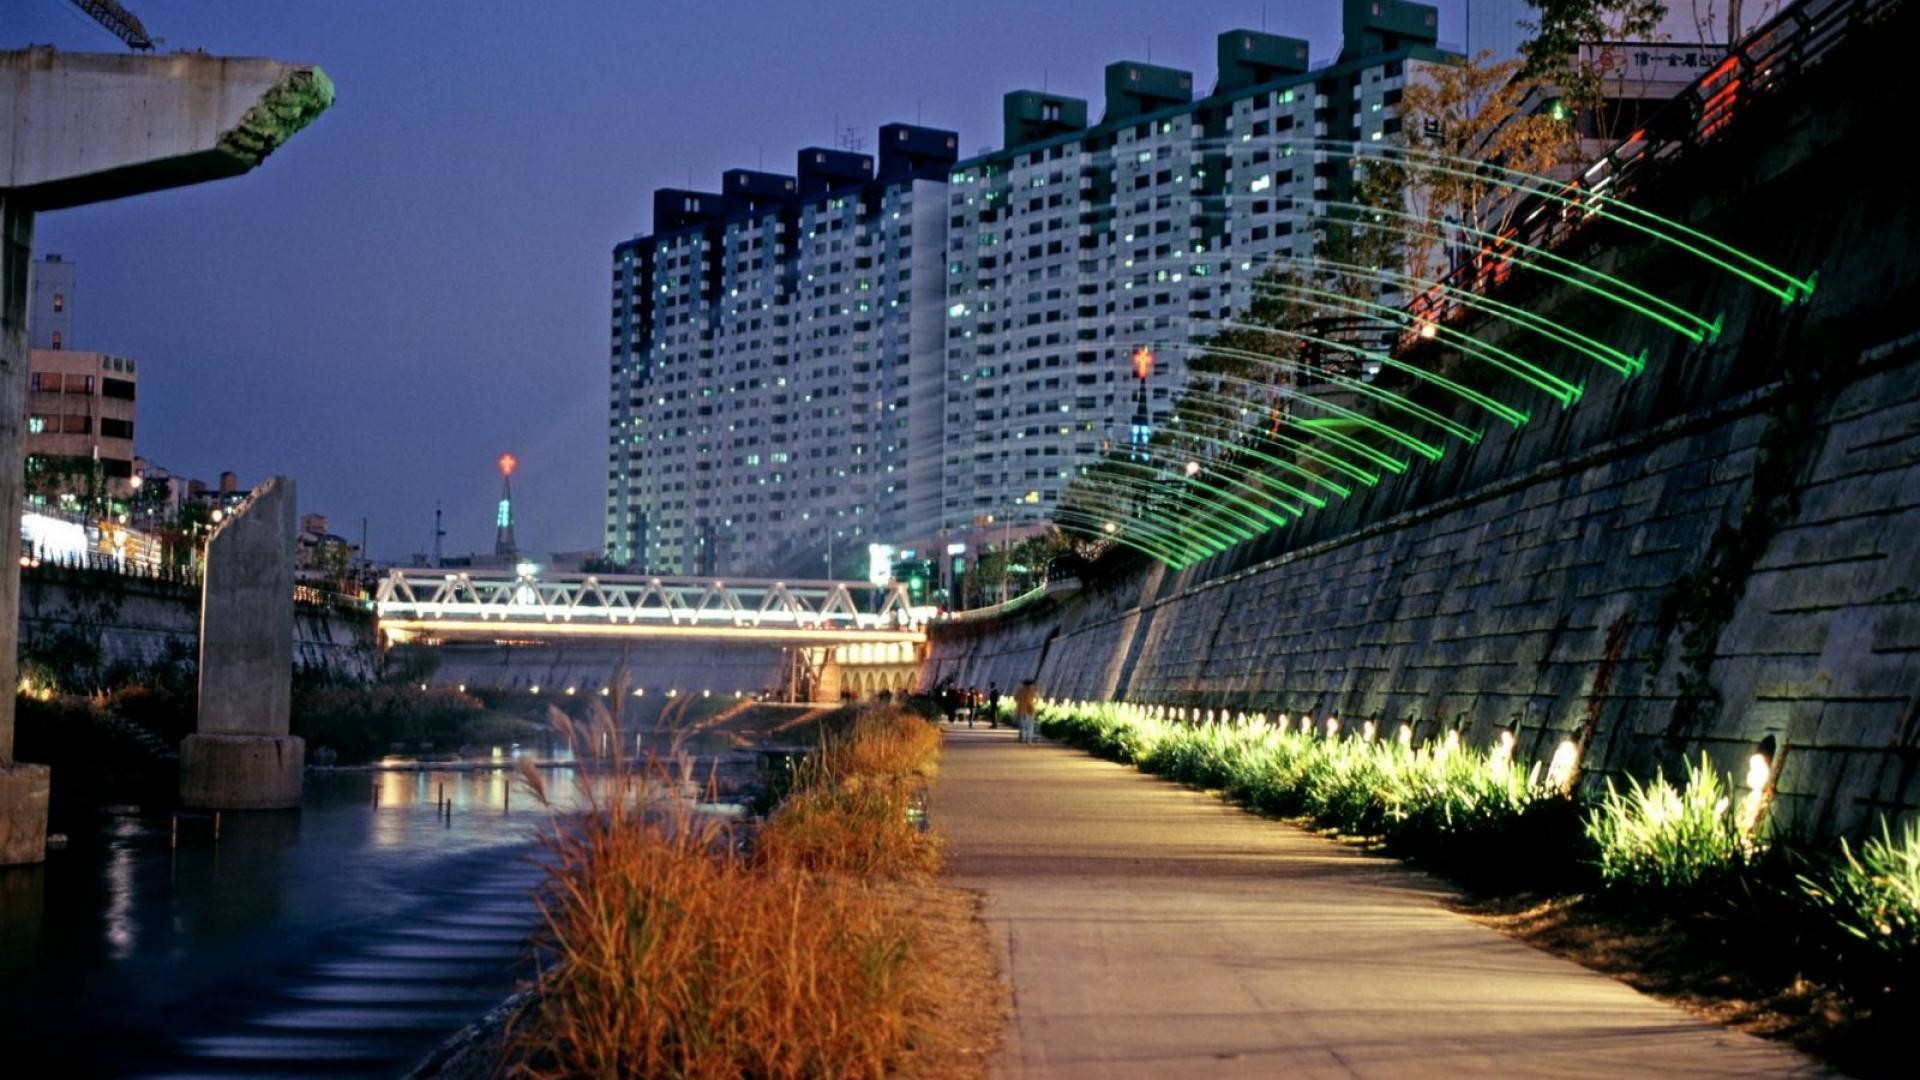 tapete korea,stadt,metropolregion,die architektur,nacht,stadtbild